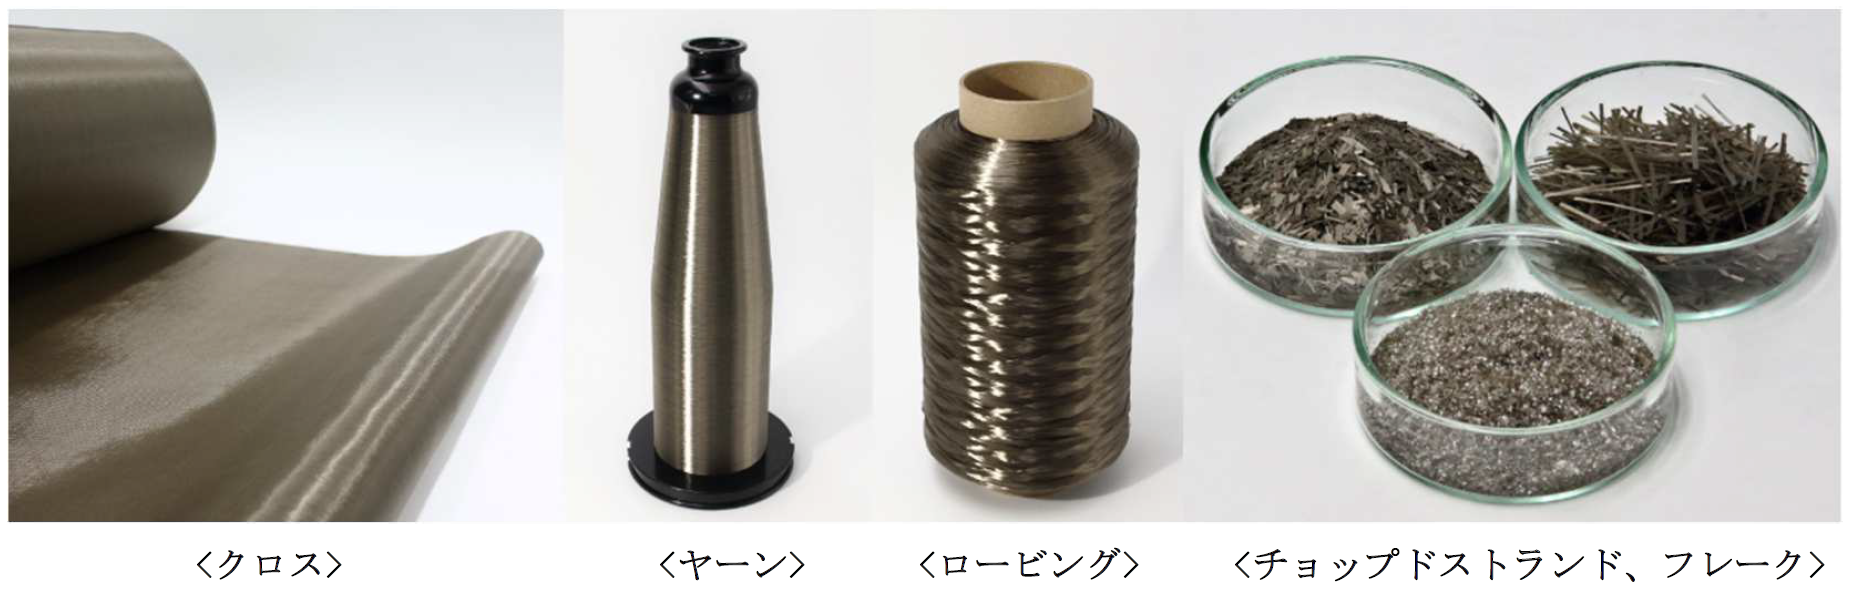 新日本繊維、Jパワー、日本板硝子による環境配慮型高機能リサイクル繊維の事業化に向けた共同検討について